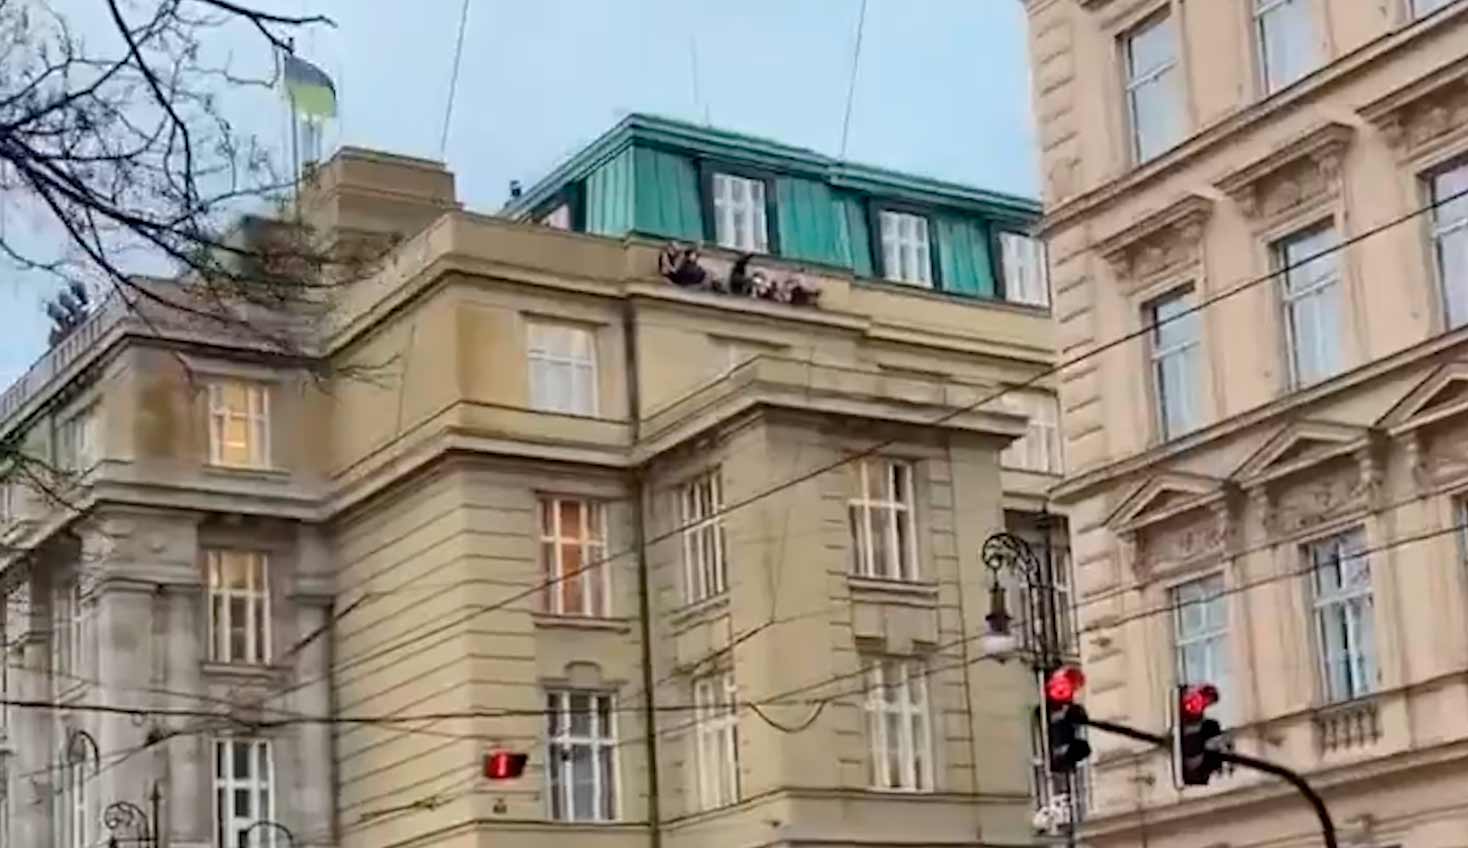 Tiroteo en Praga deja 11 muertos tras abrir fuego un tirador en la universidad. Fotos y video: Reproducción Twitter @BabakTaghvaee1